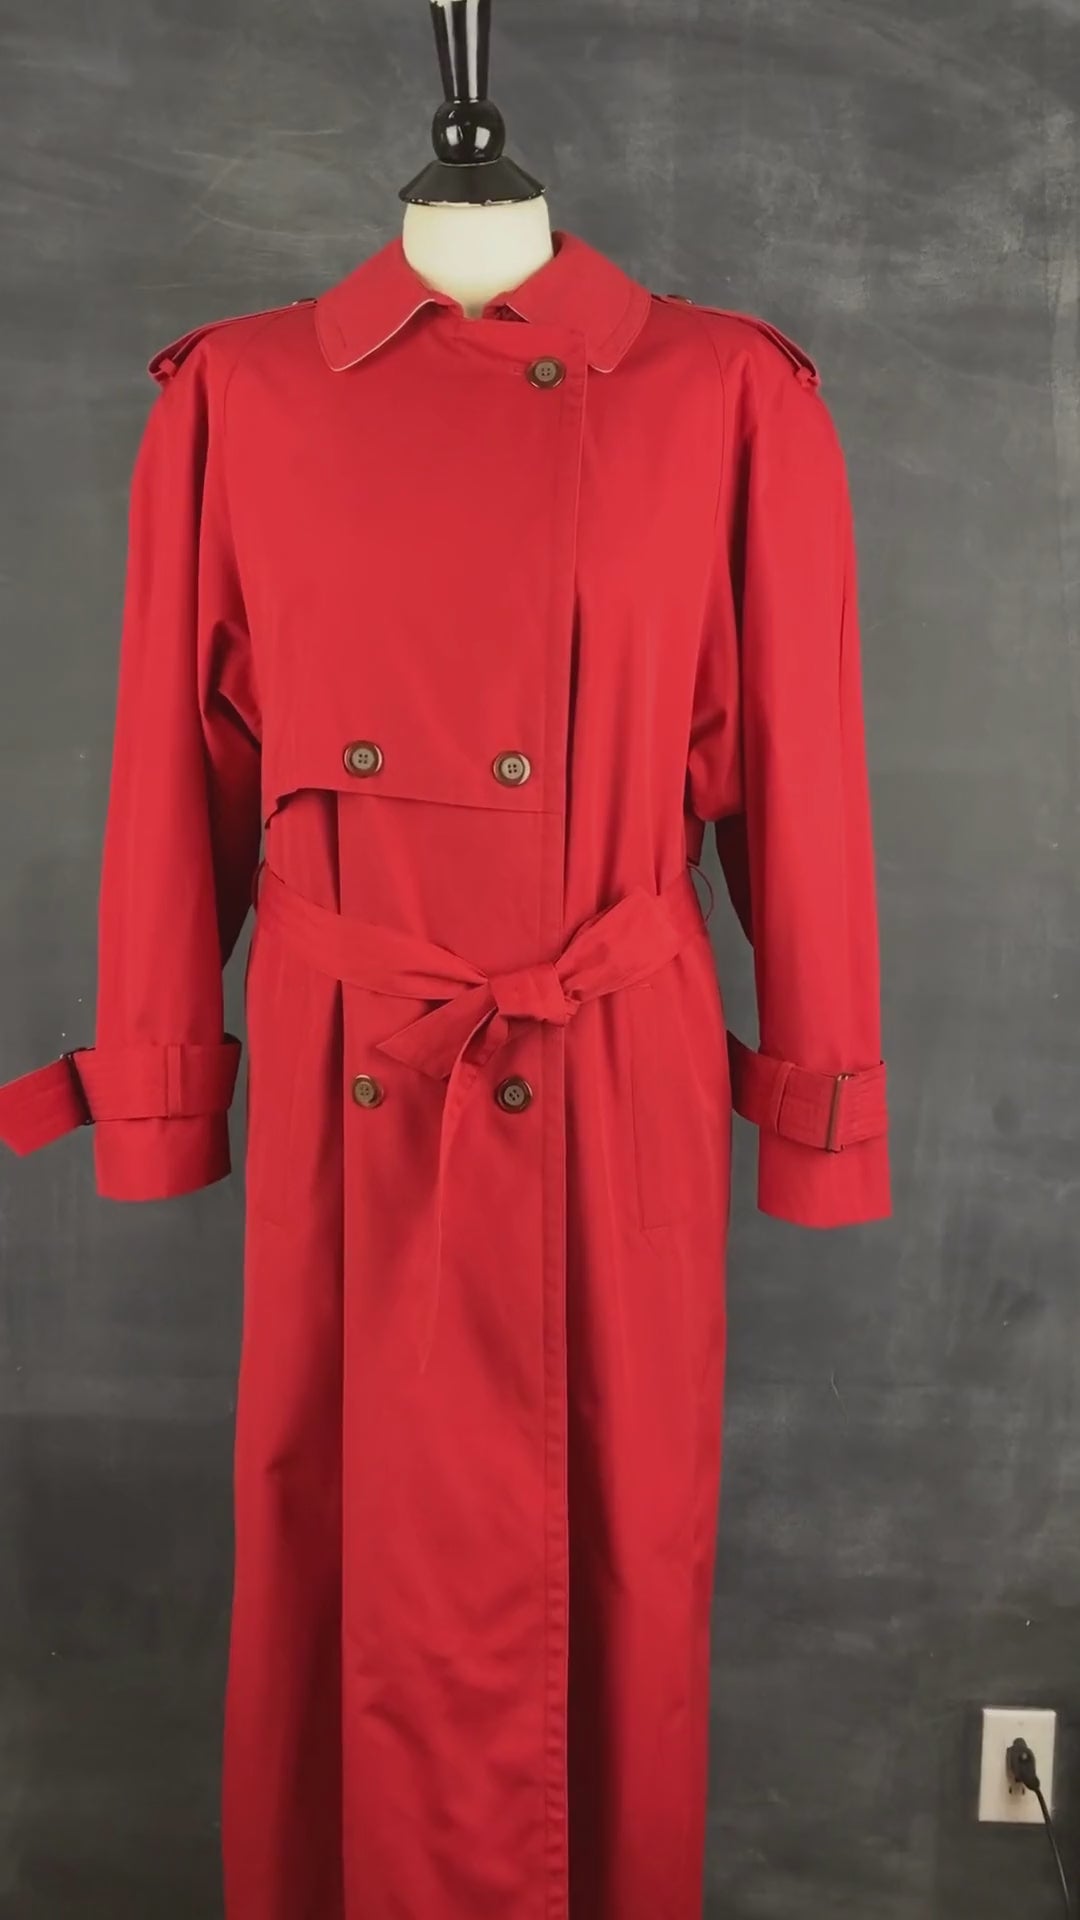 Manteau long vintage style trench rouge, taille small/medium. Vue de la vidéo qui présente tous les détails.